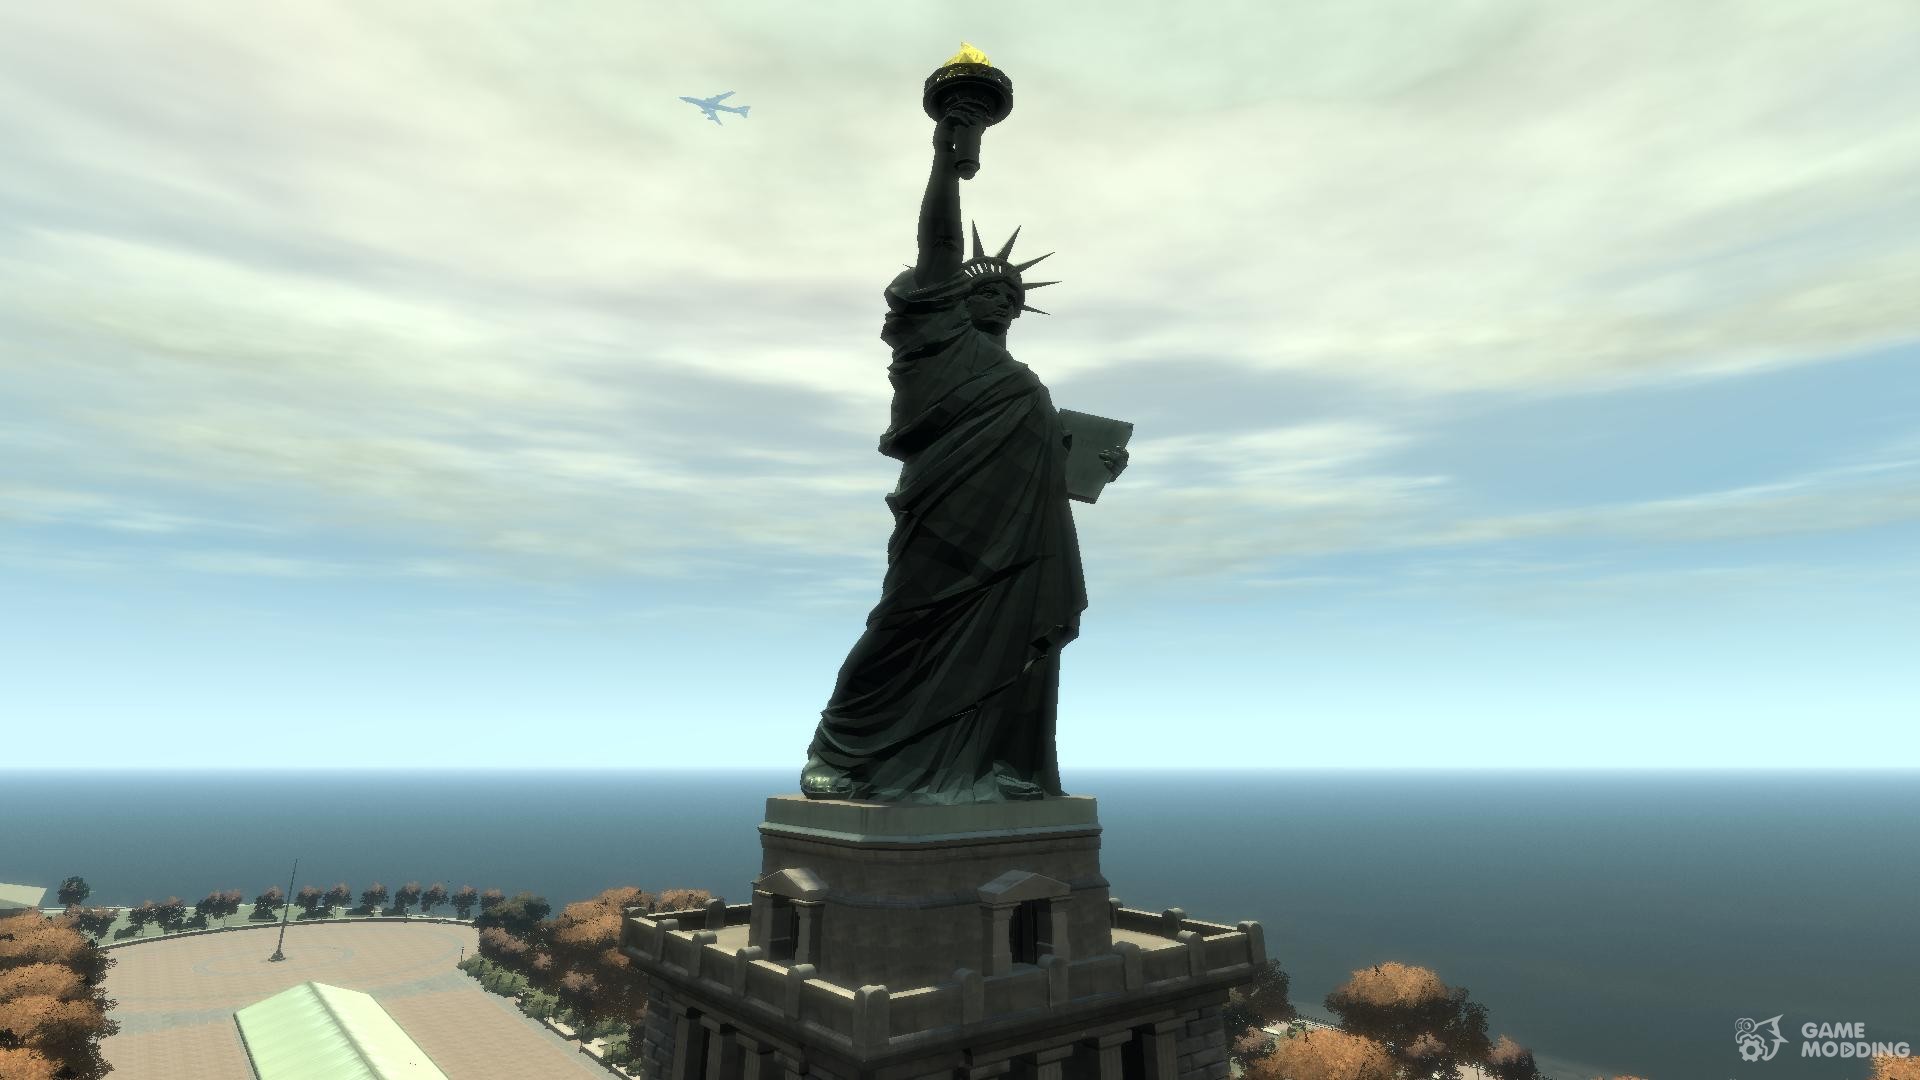 Статуя свободы сзади